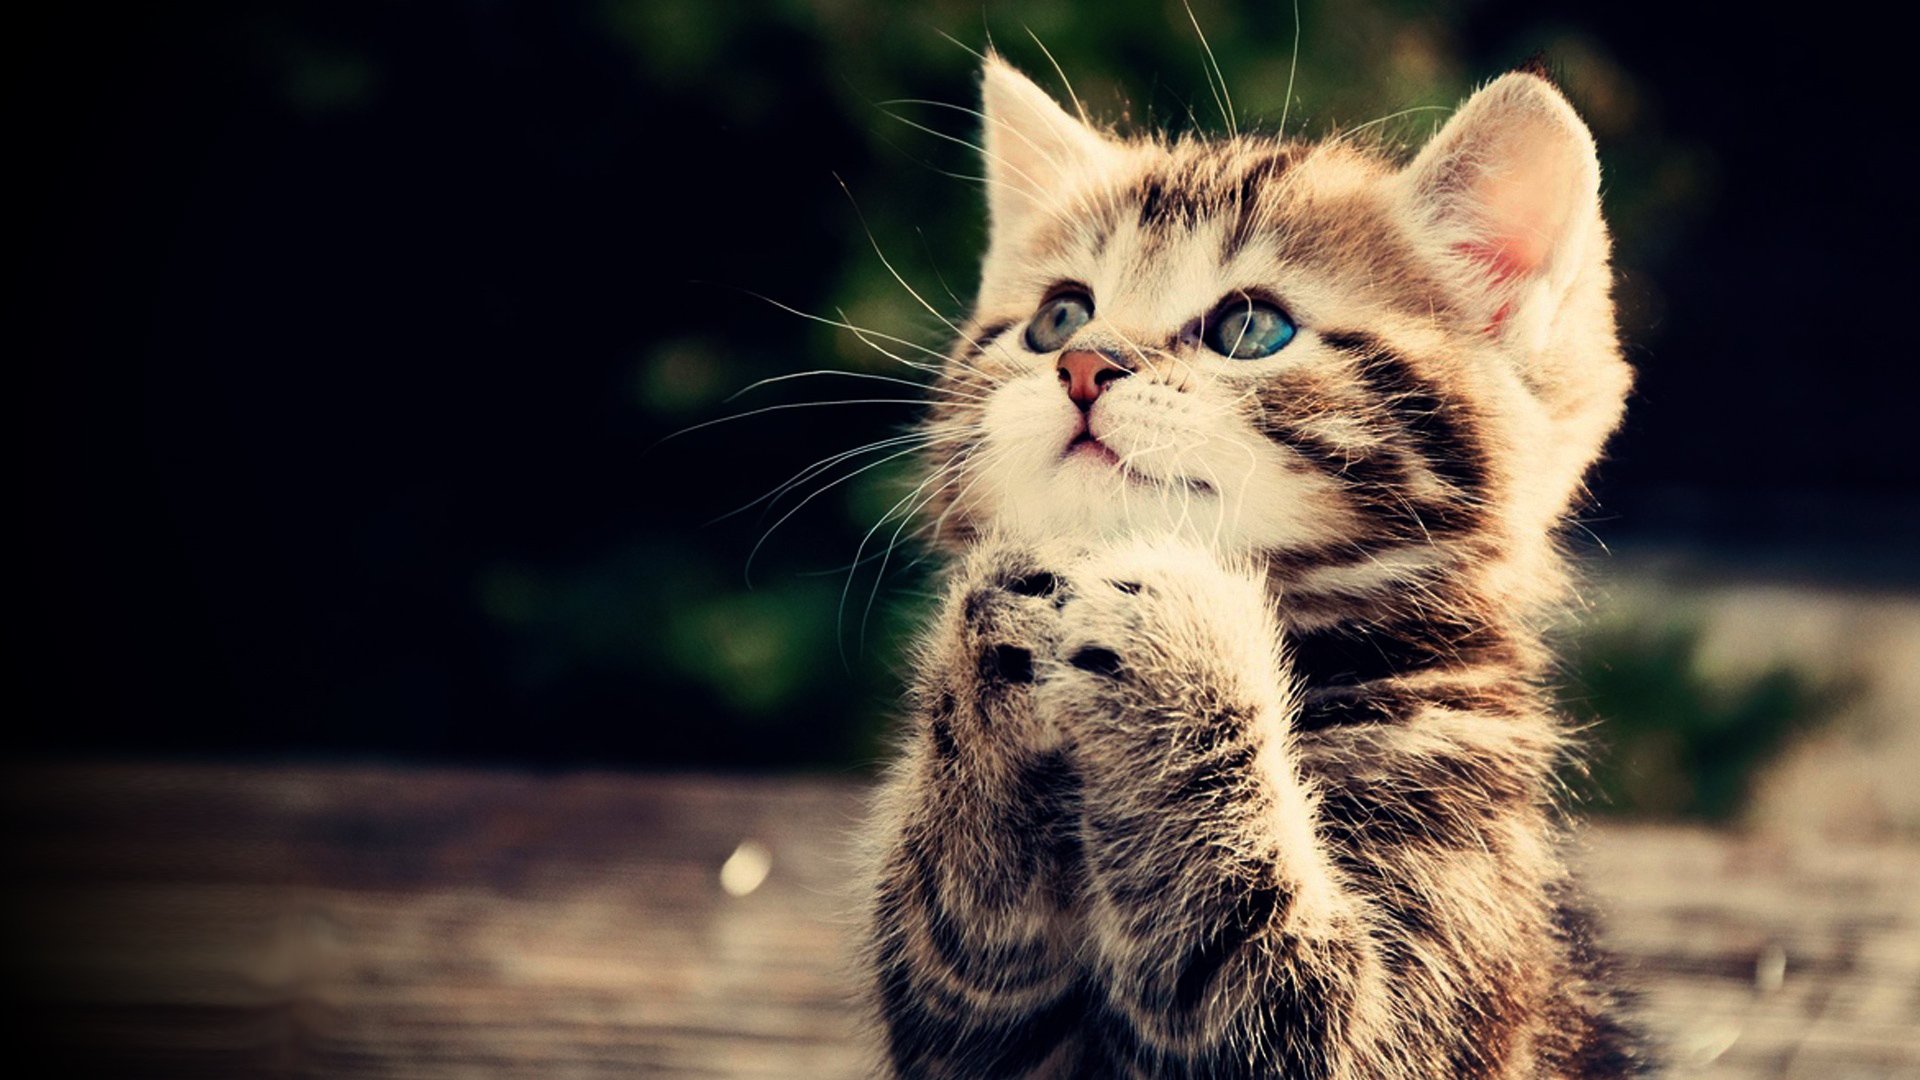 Praying kitten Full HD wallpaper cute animal picture 1080p download